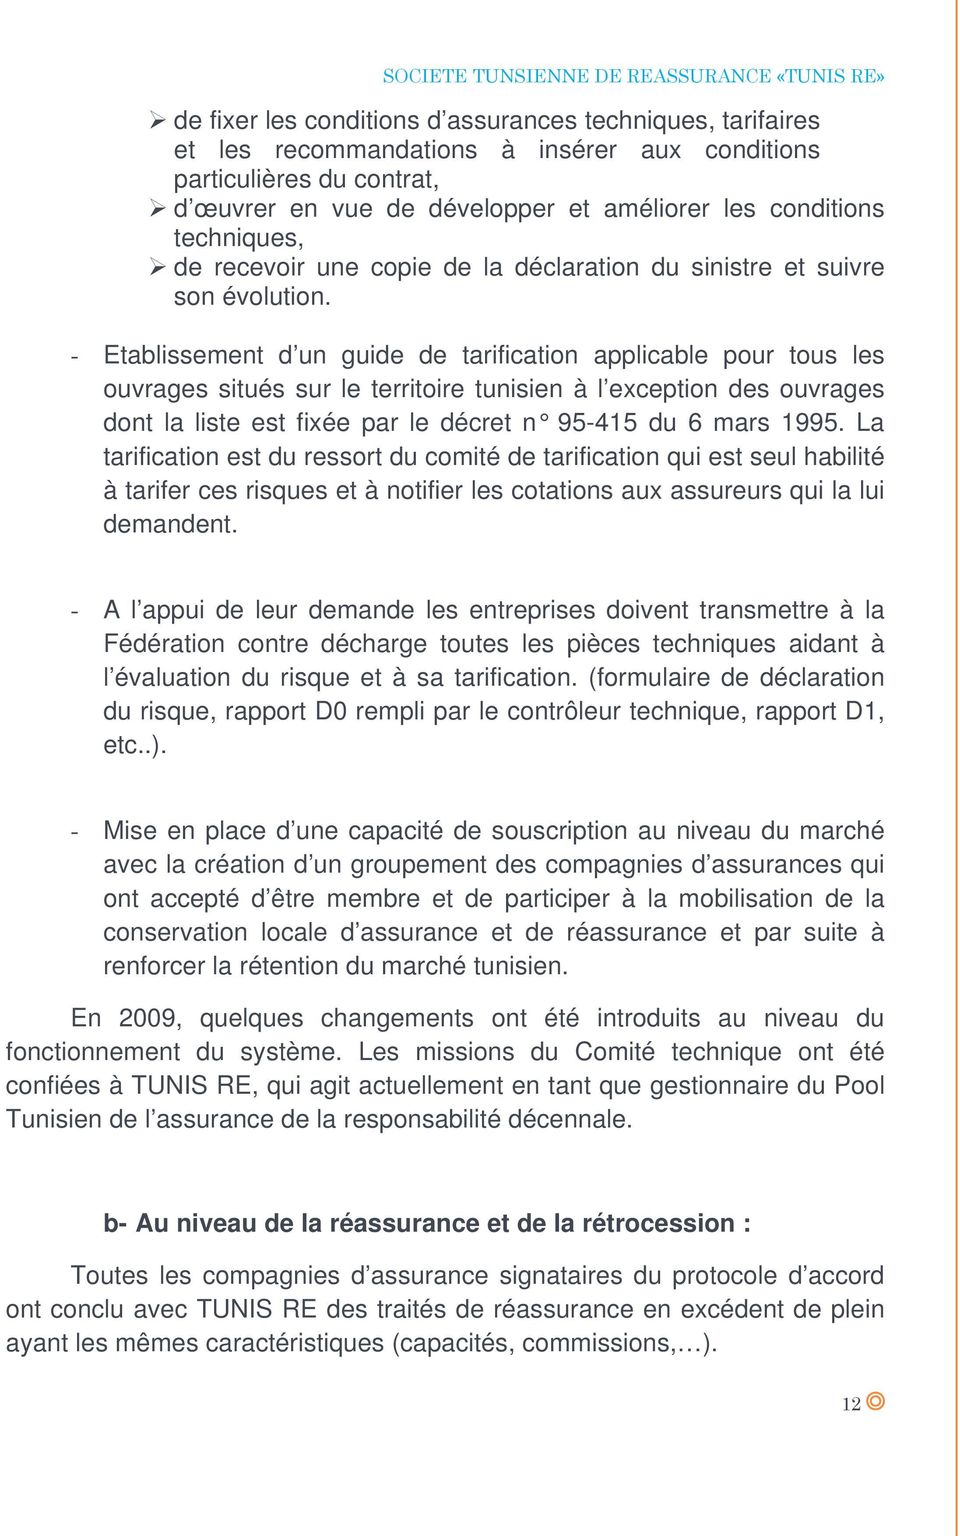 - Etablissement d un guide de tarification applicable pour tous les ouvrages situés sur le territoire tunisien à l exception des ouvrages dont la liste est fixée par le décret n 95-415 du 6 mars 1995.